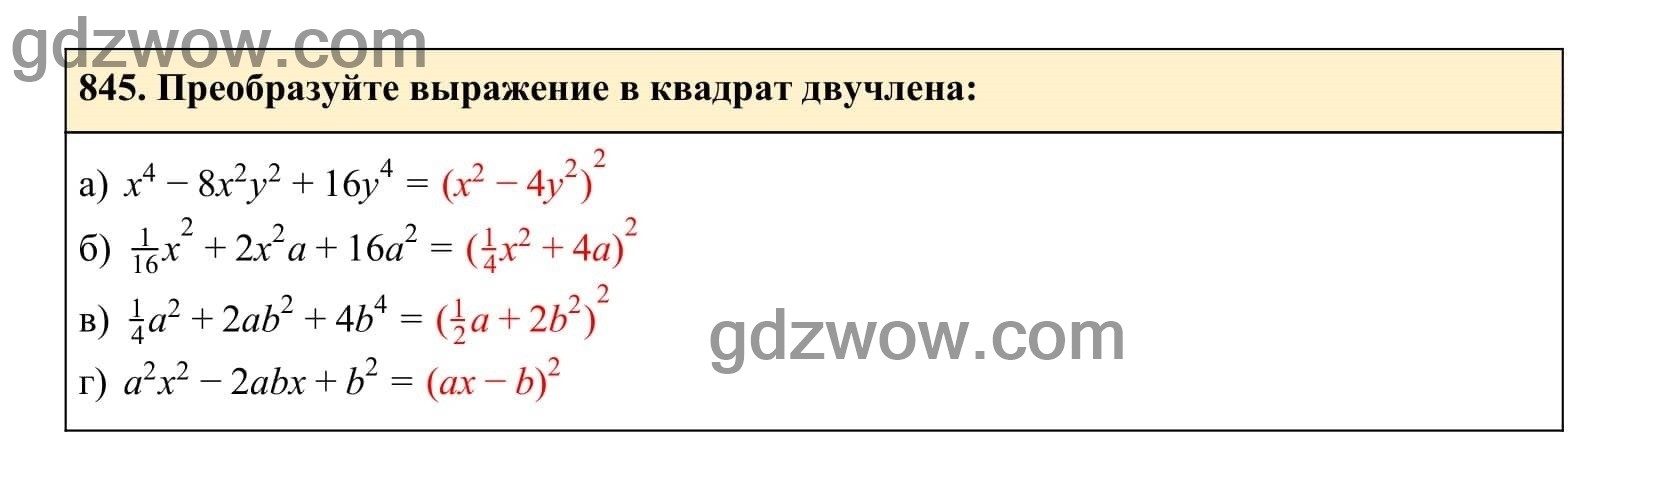 Упражнение 845 - ГДЗ по Алгебре 7 класс Учебник Макарычев (решебник) - GDZwow